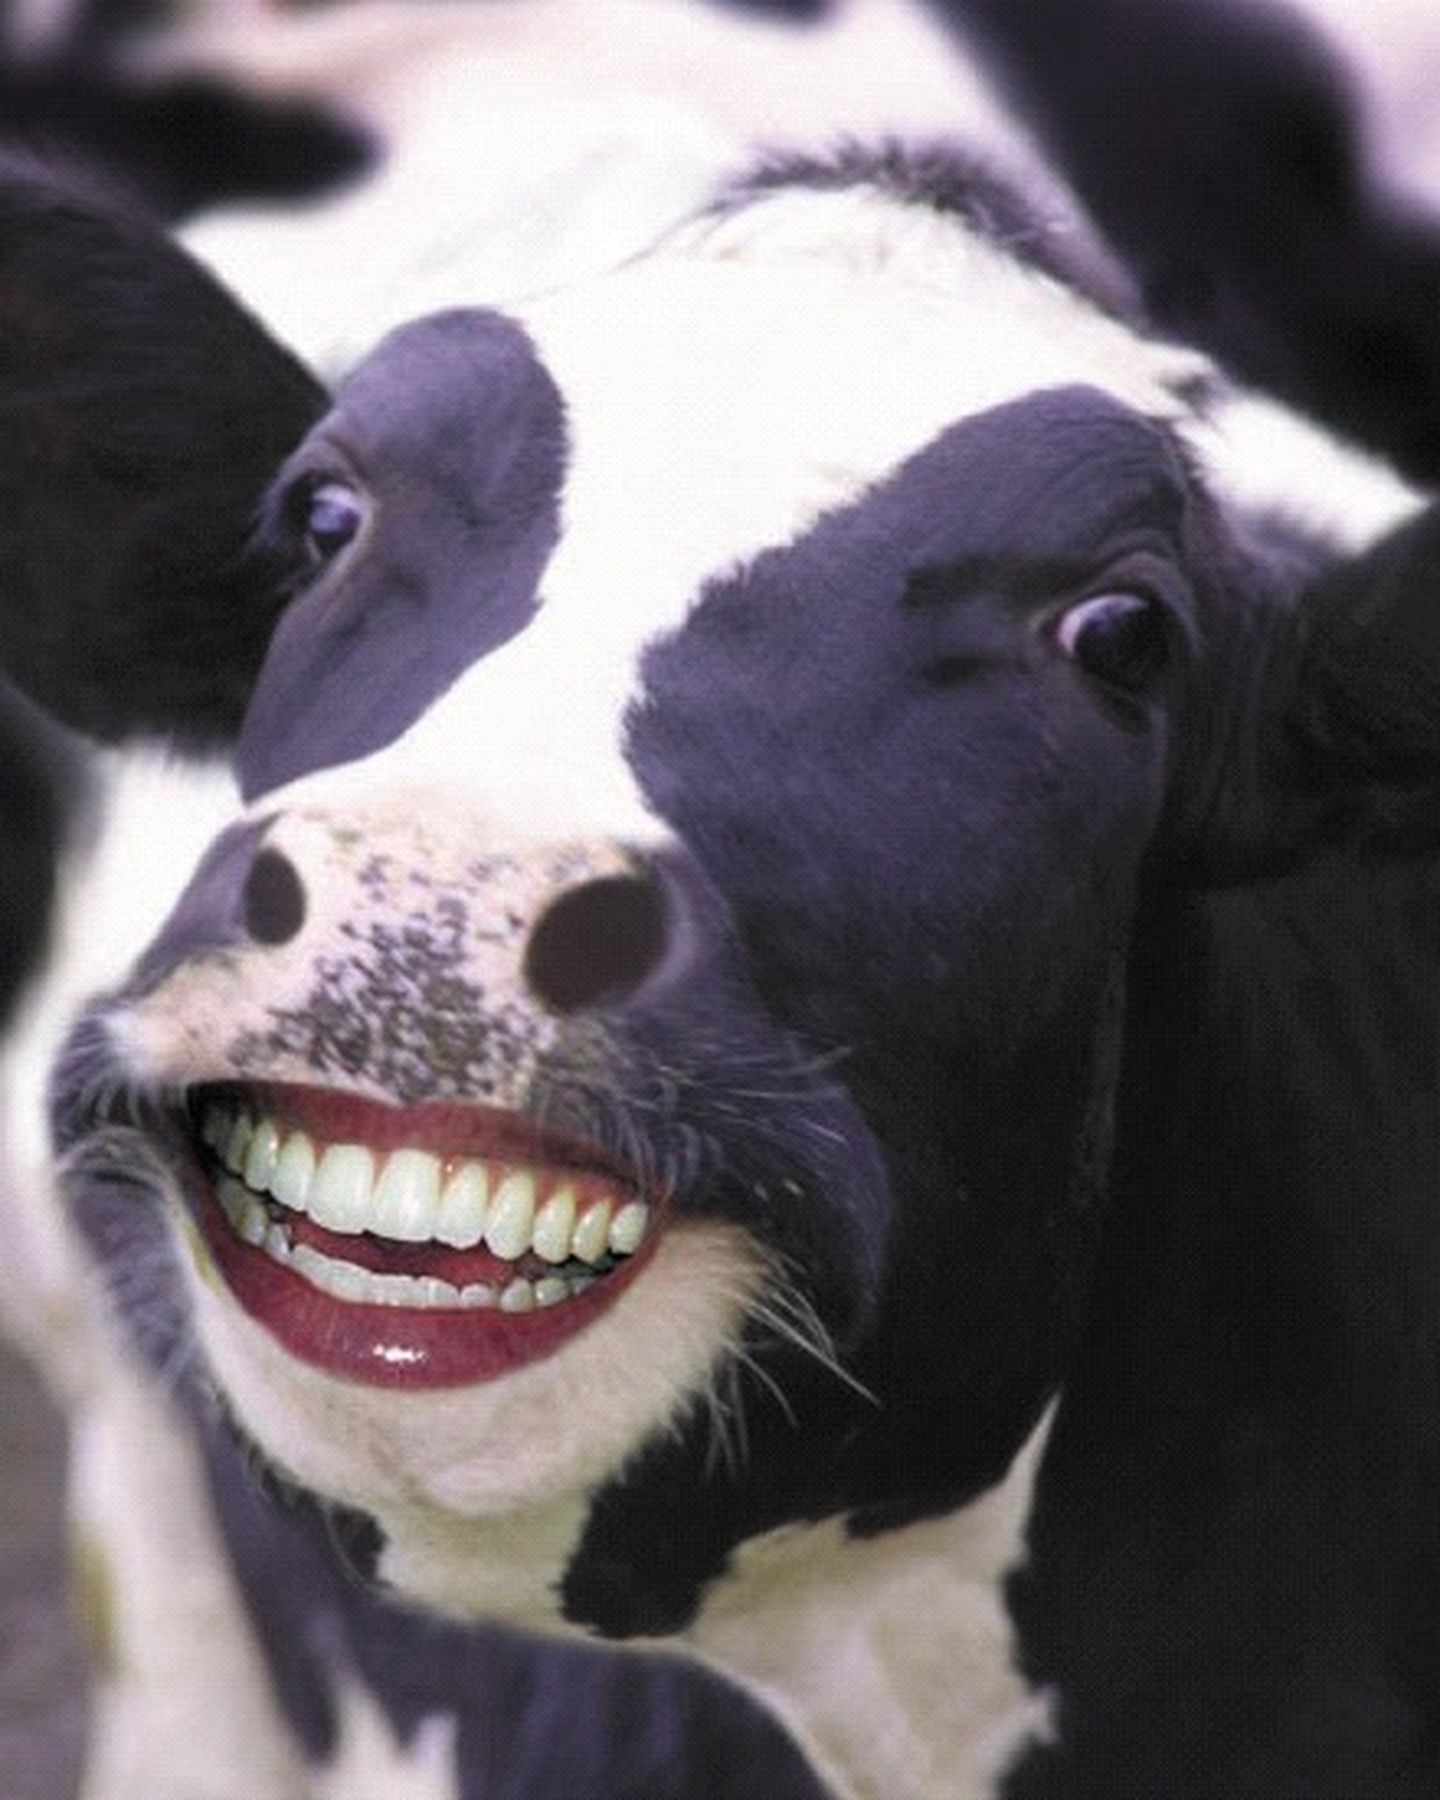 开心的牛比自闭的牛肉更好吃吗?